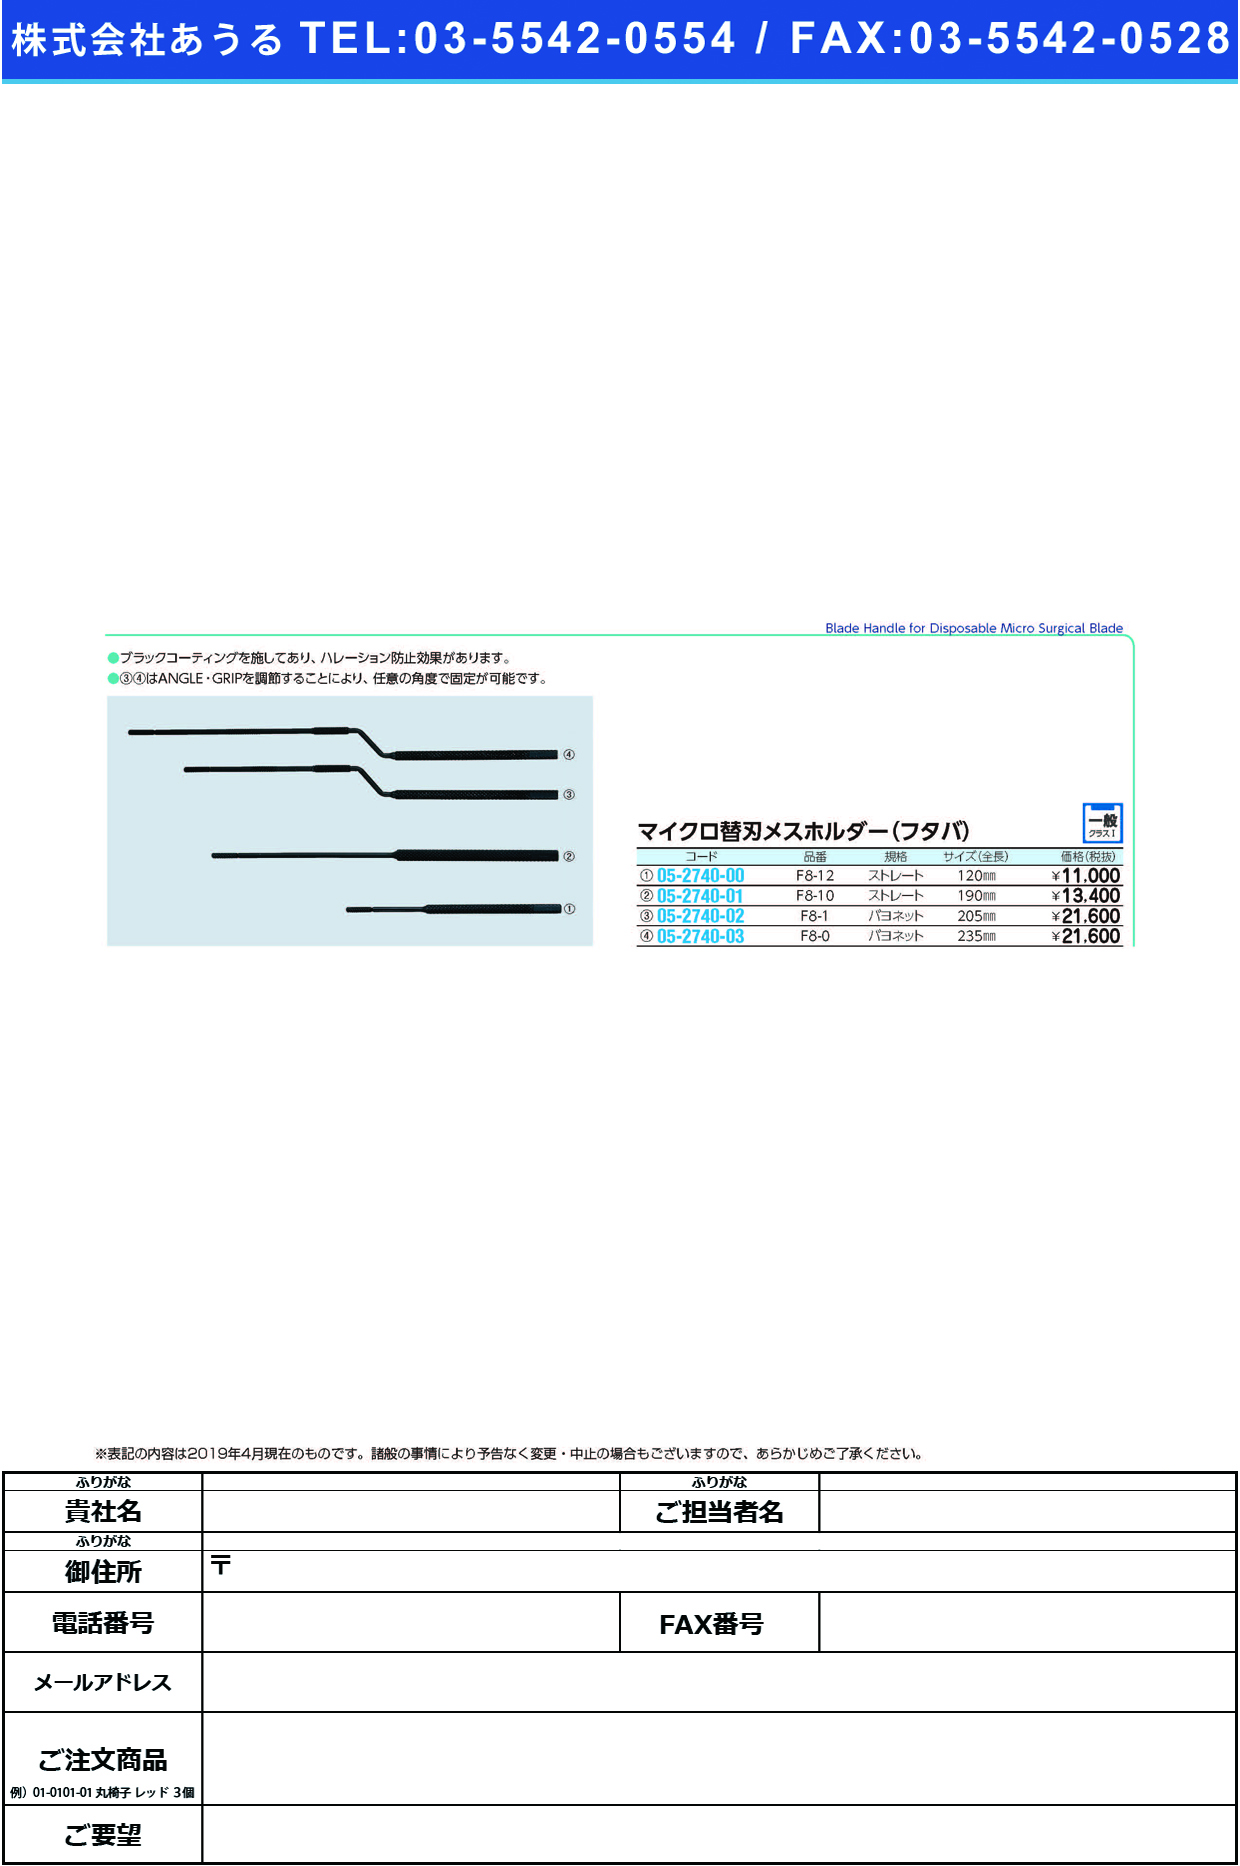 (05-2740-01)マイクロ替刃ホルダー（フタバ） F8-10ｶﾞﾀ ﾏｲｸﾛｶｴﾊﾞﾎﾙﾀﾞｰ(ﾌﾀﾊﾞ)【1本単位】【2019年カタログ商品】